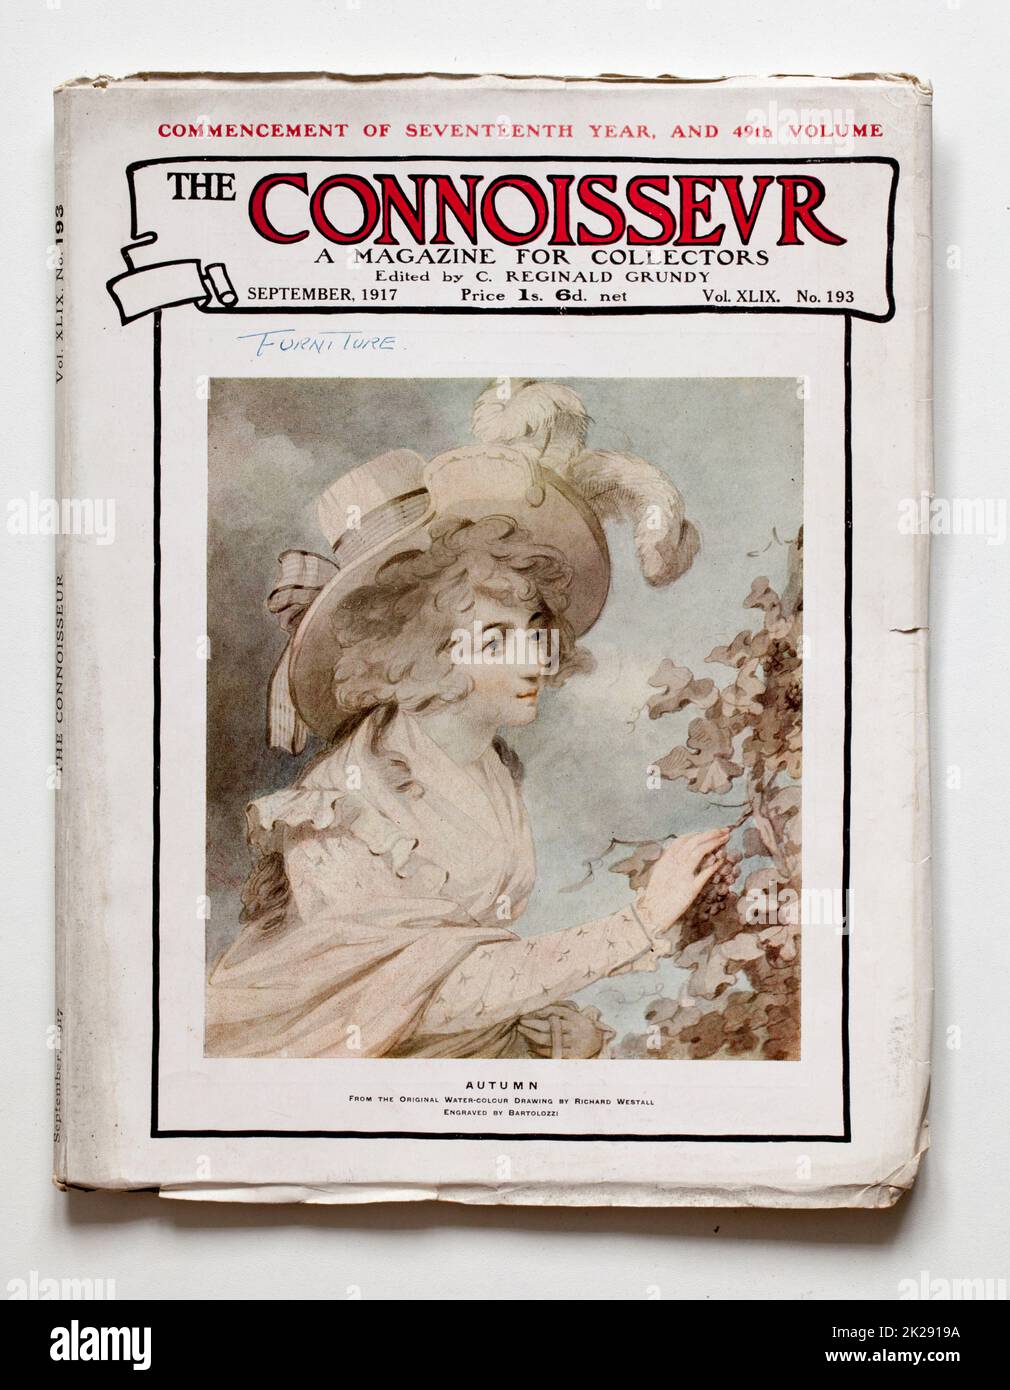 Ausgabe 1917 des Connoisseur Magazins - Herbstmalerei auf dem vorderen Cover Stockfoto